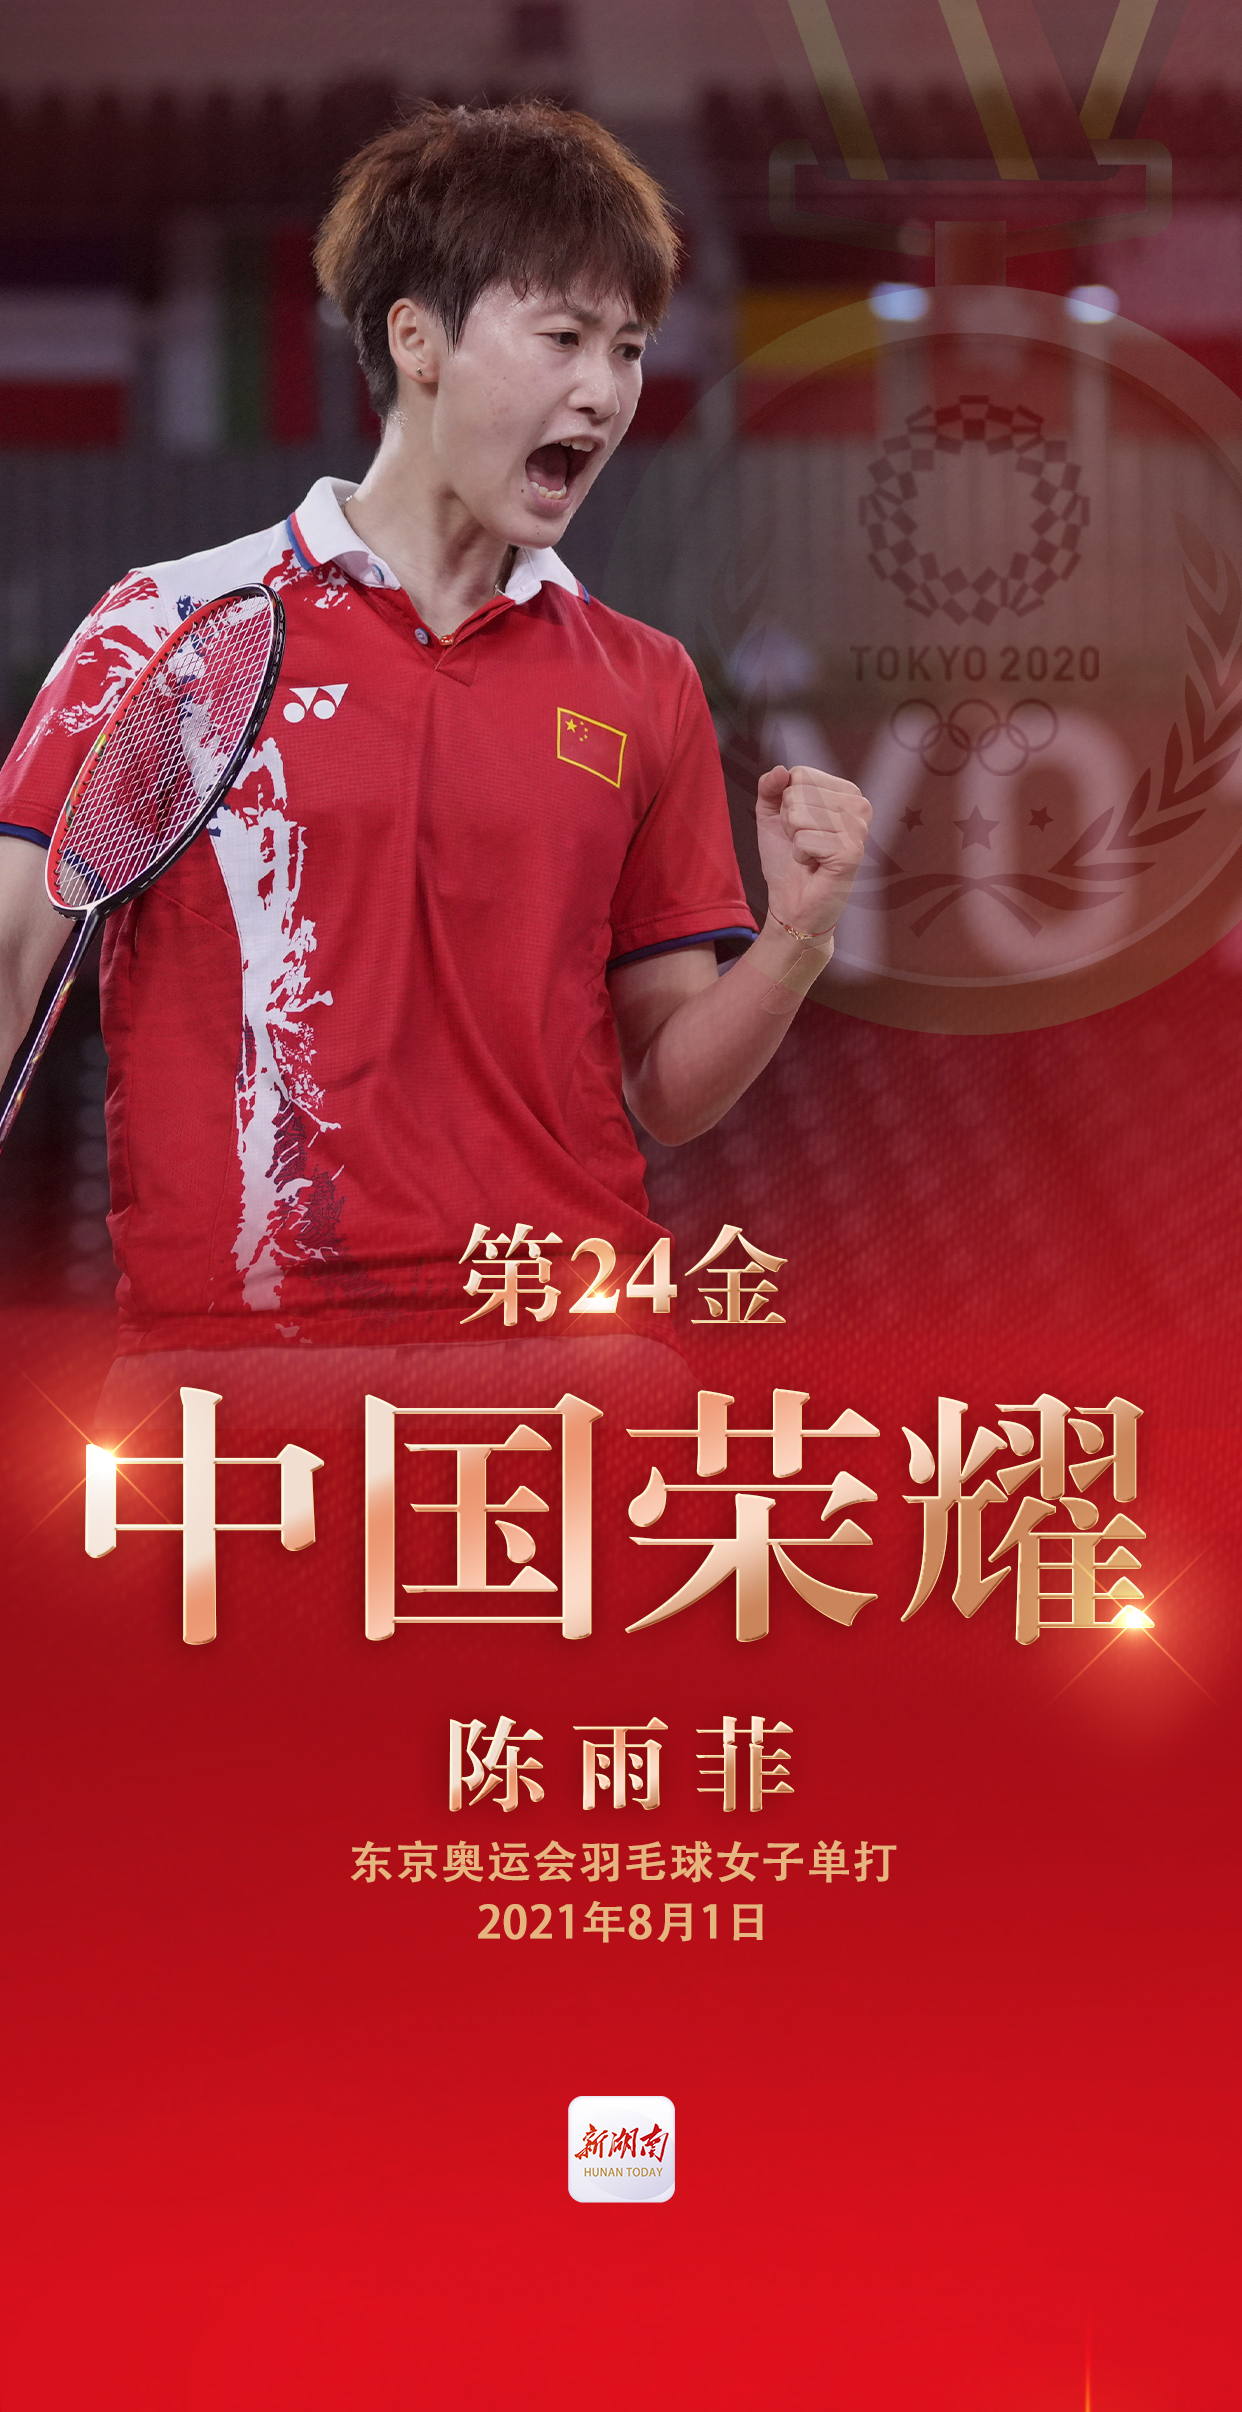 视频海报丨第24金!陈雨菲获得东京奥运会羽毛球女子单打金牌